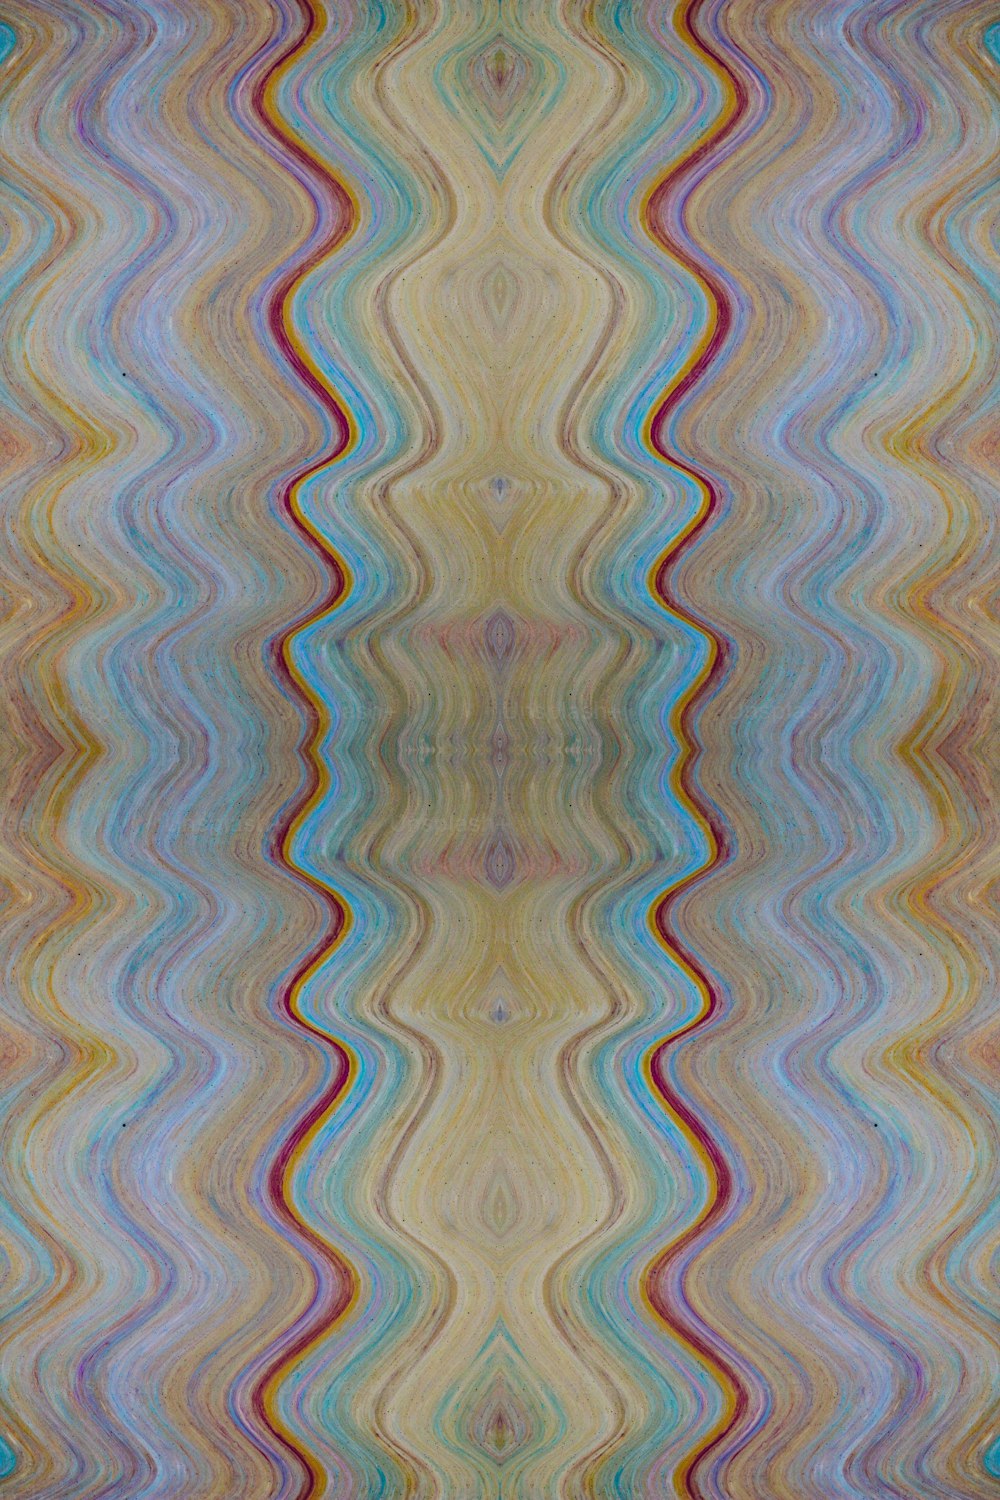 Un patrón multicolor de líneas onduladas